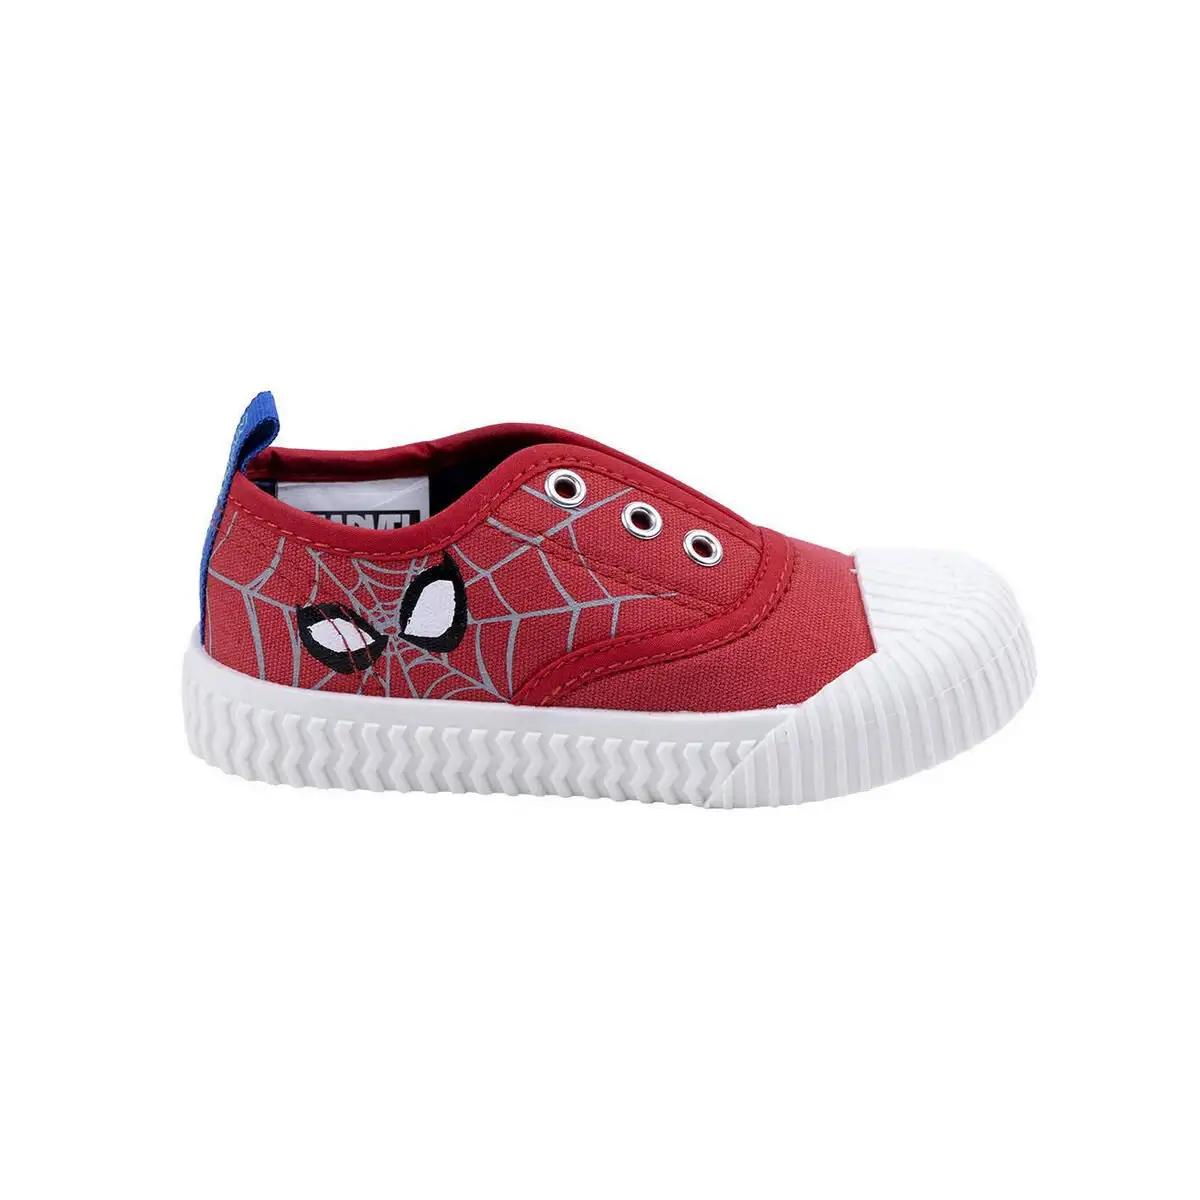 Chaussures casual enfant spiderman rouge_9516. Bienvenue sur DIAYTAR SENEGAL - Où Chaque Produit a son Charme. Explorez notre sélection minutieuse et trouvez des articles qui vous séduisent et vous inspirent.